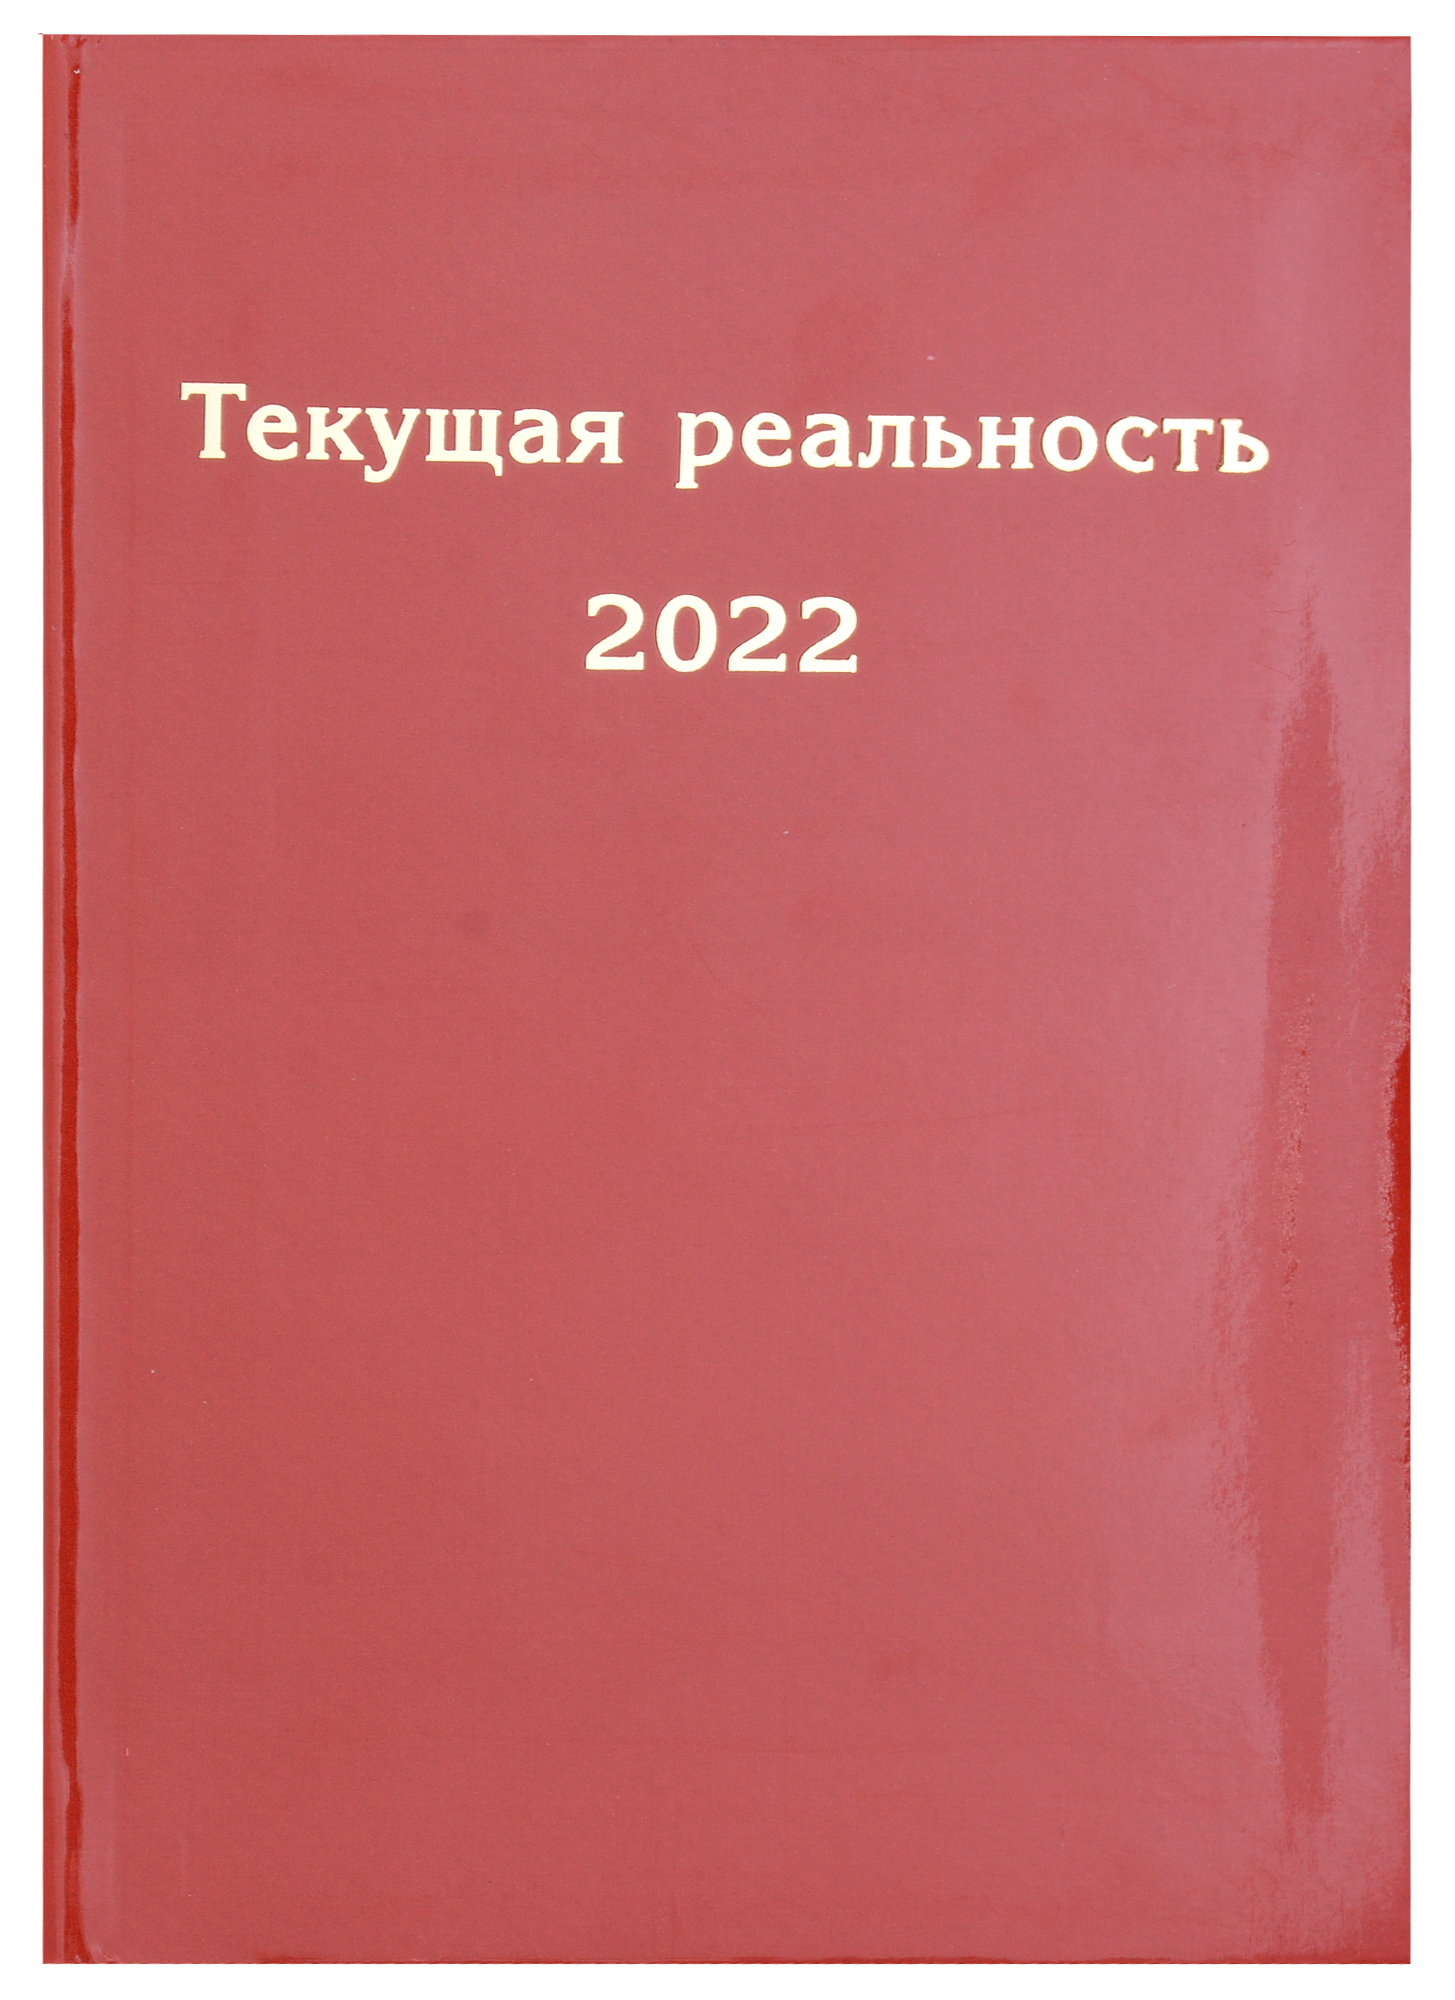 пономарева е ред сост текущая реальность 2021 избранная хронология Текущая реальность 2022. Избранная хронология